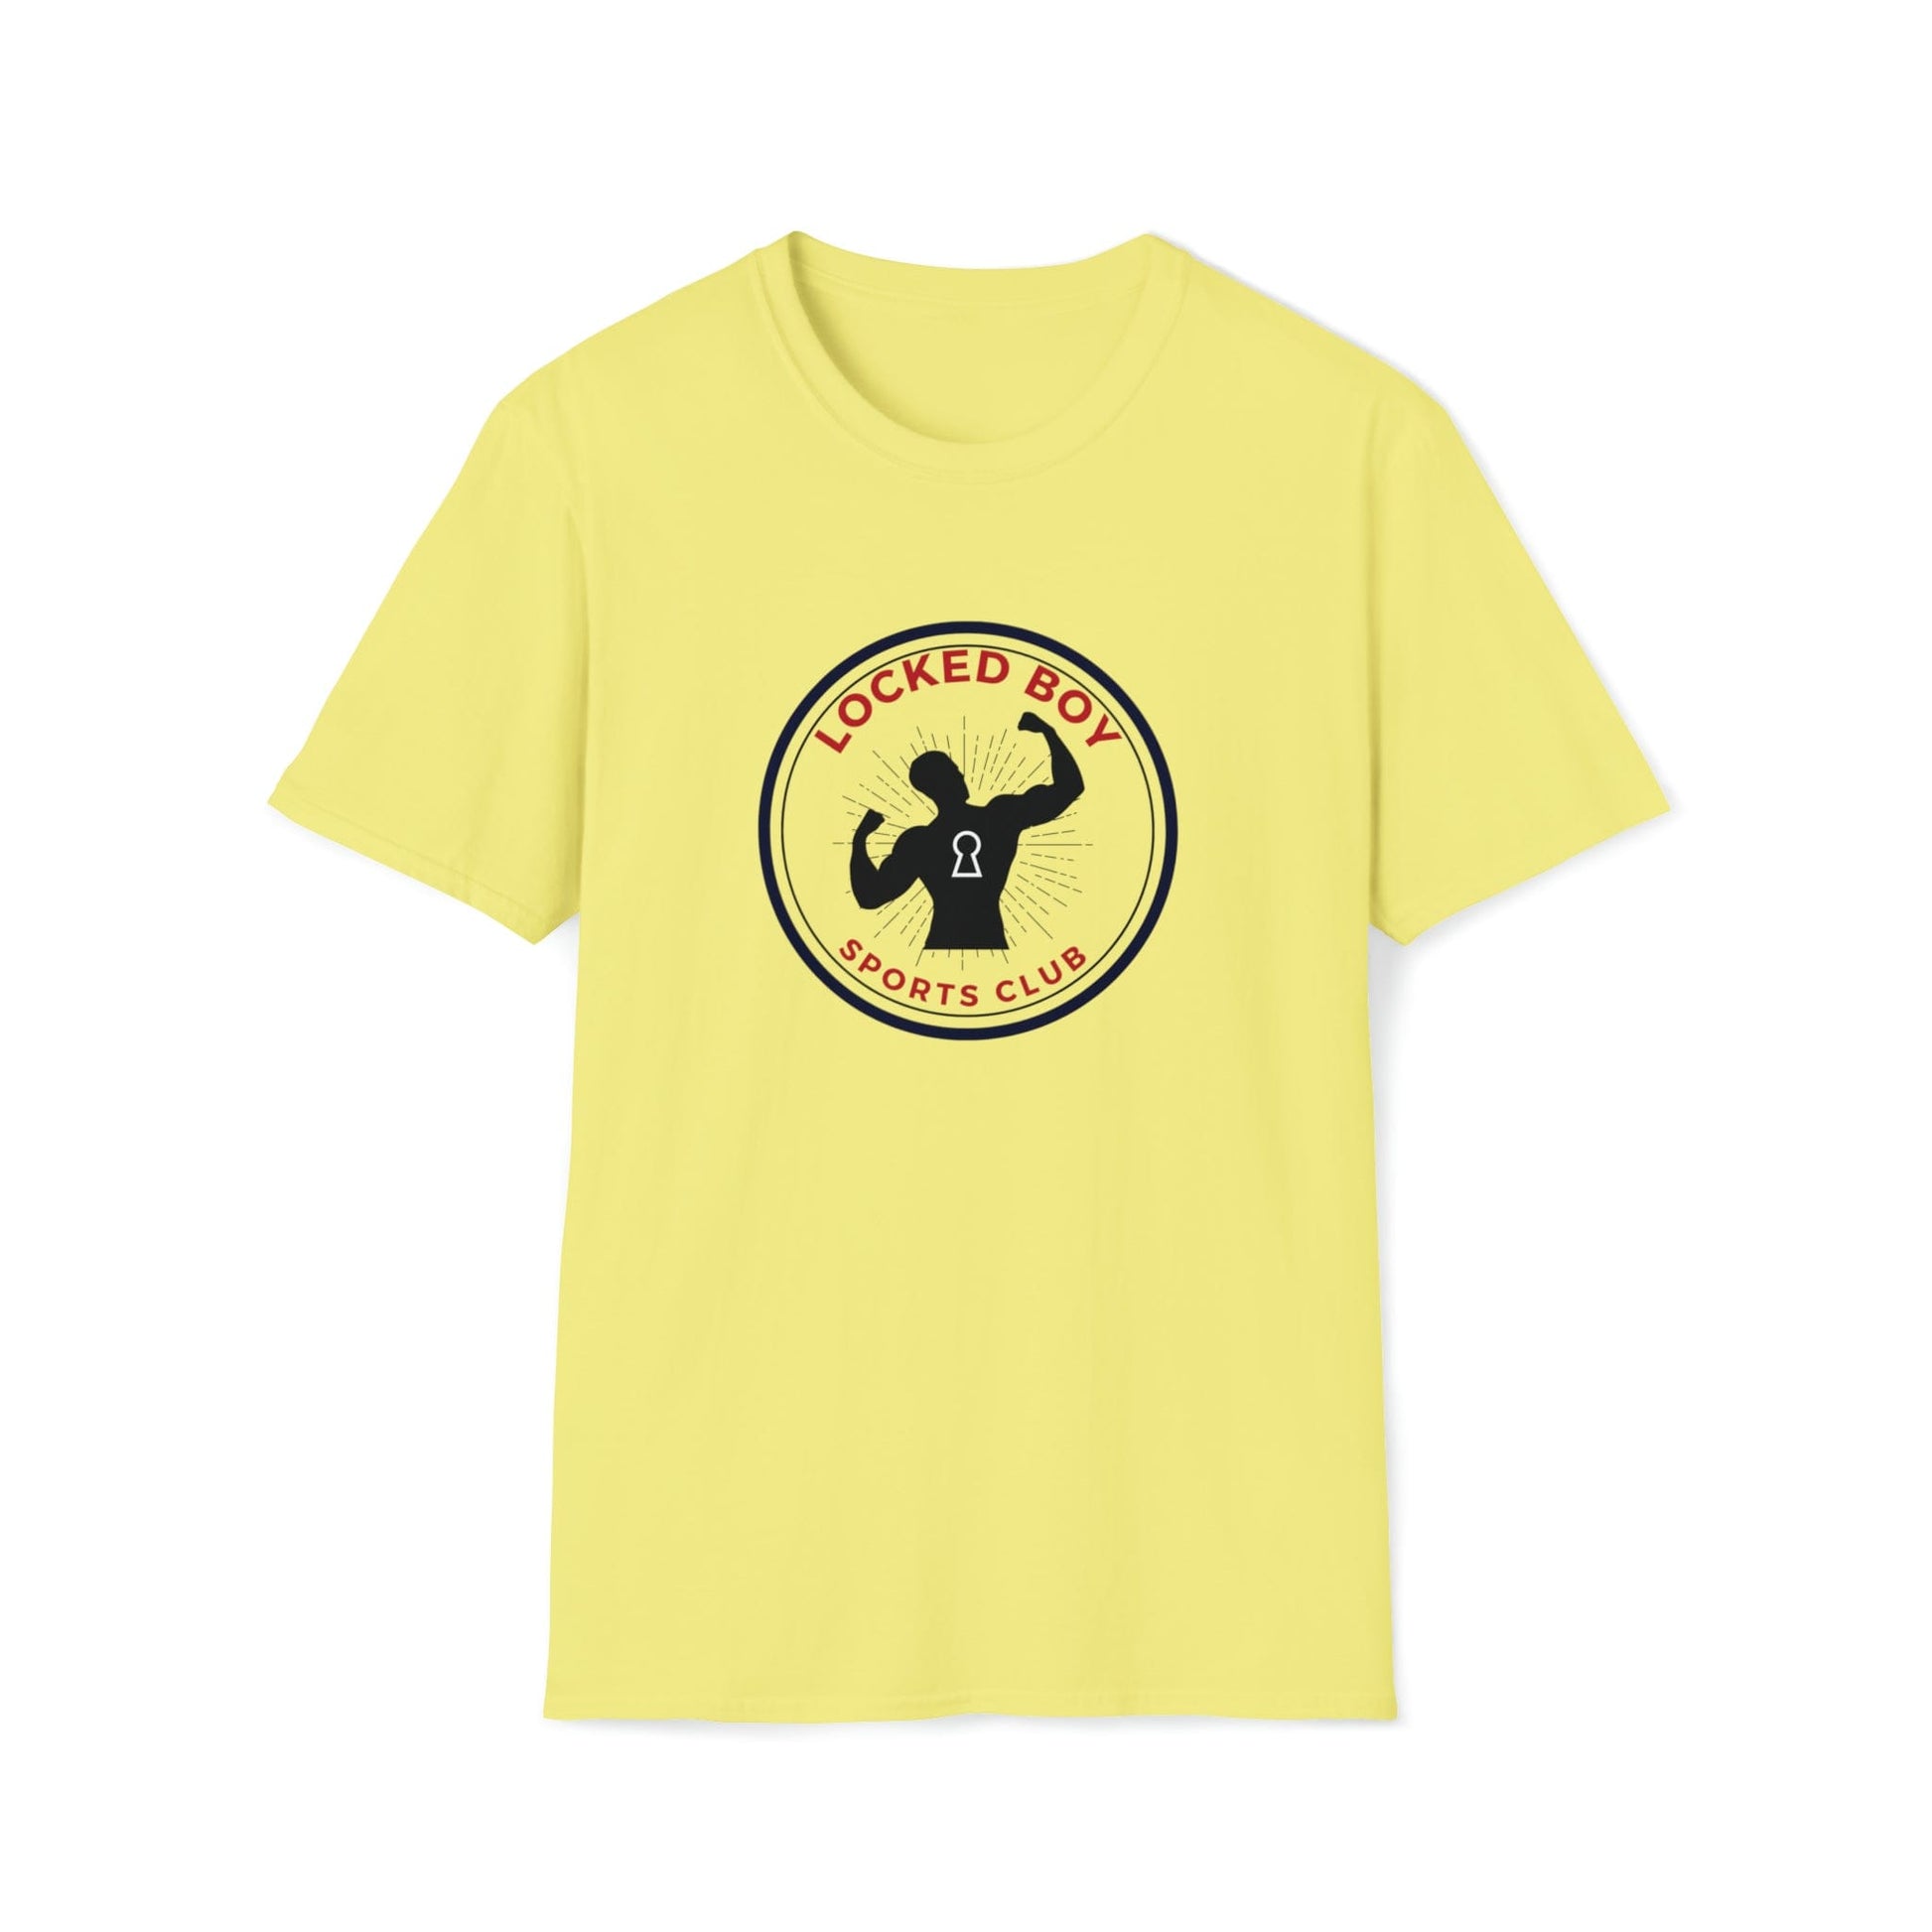 T-Shirt Cornsilk / S LockedBoy Sports Club - Chastity Tshirt LEATHERDADDY BATOR